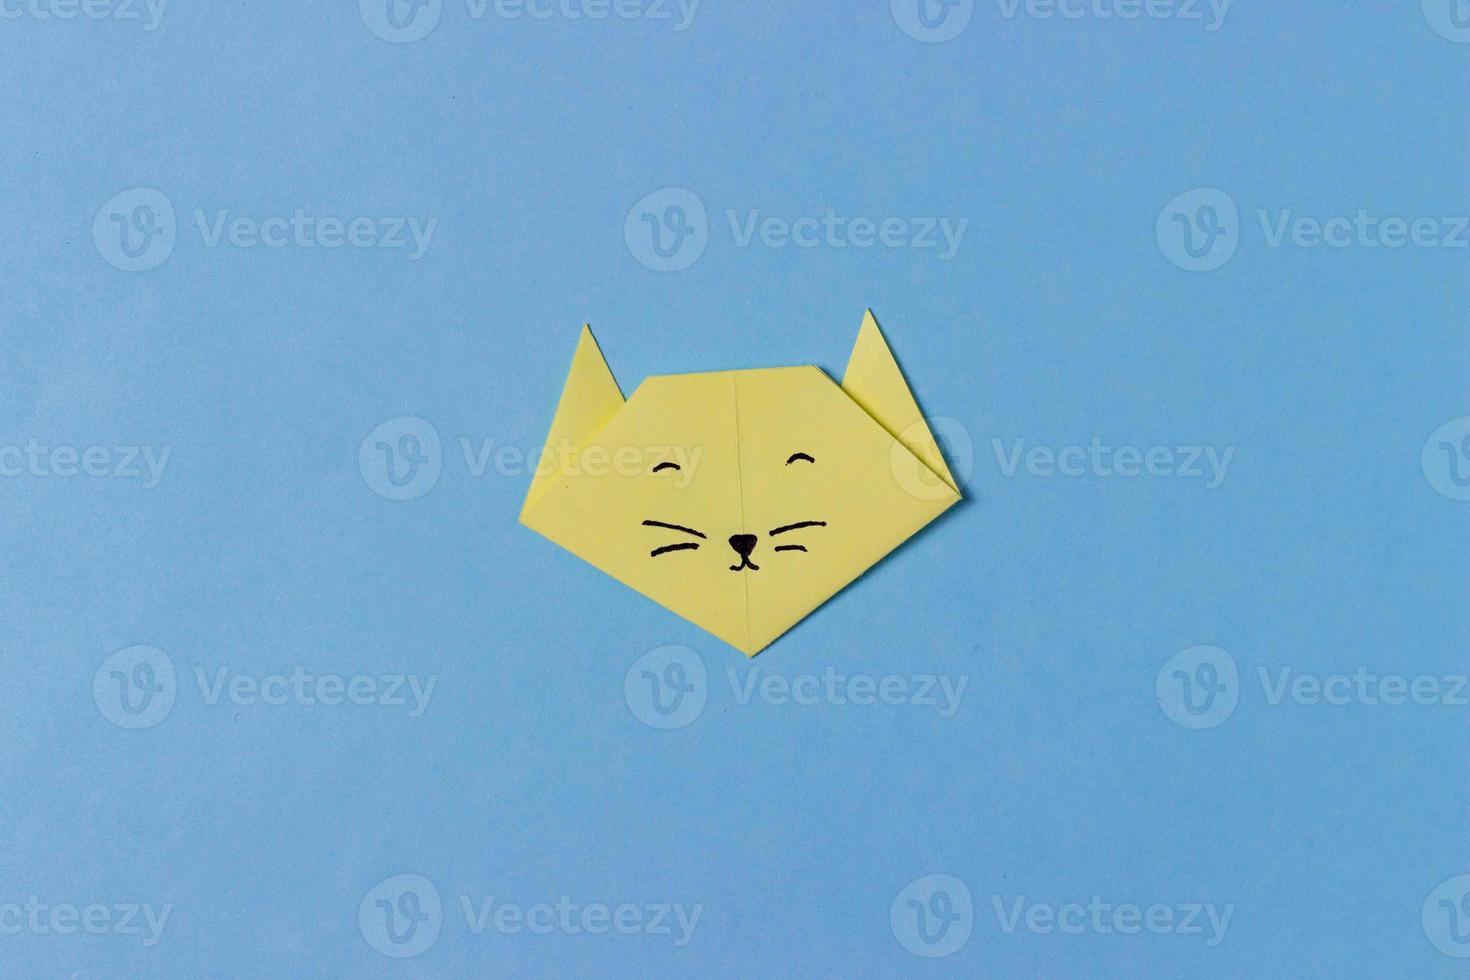 la tête du chat est pliée à partir de papier jaune dans la technique de l'origami avec des yeux, un nez et une moustache peints. au milieu du fond bleu. photo